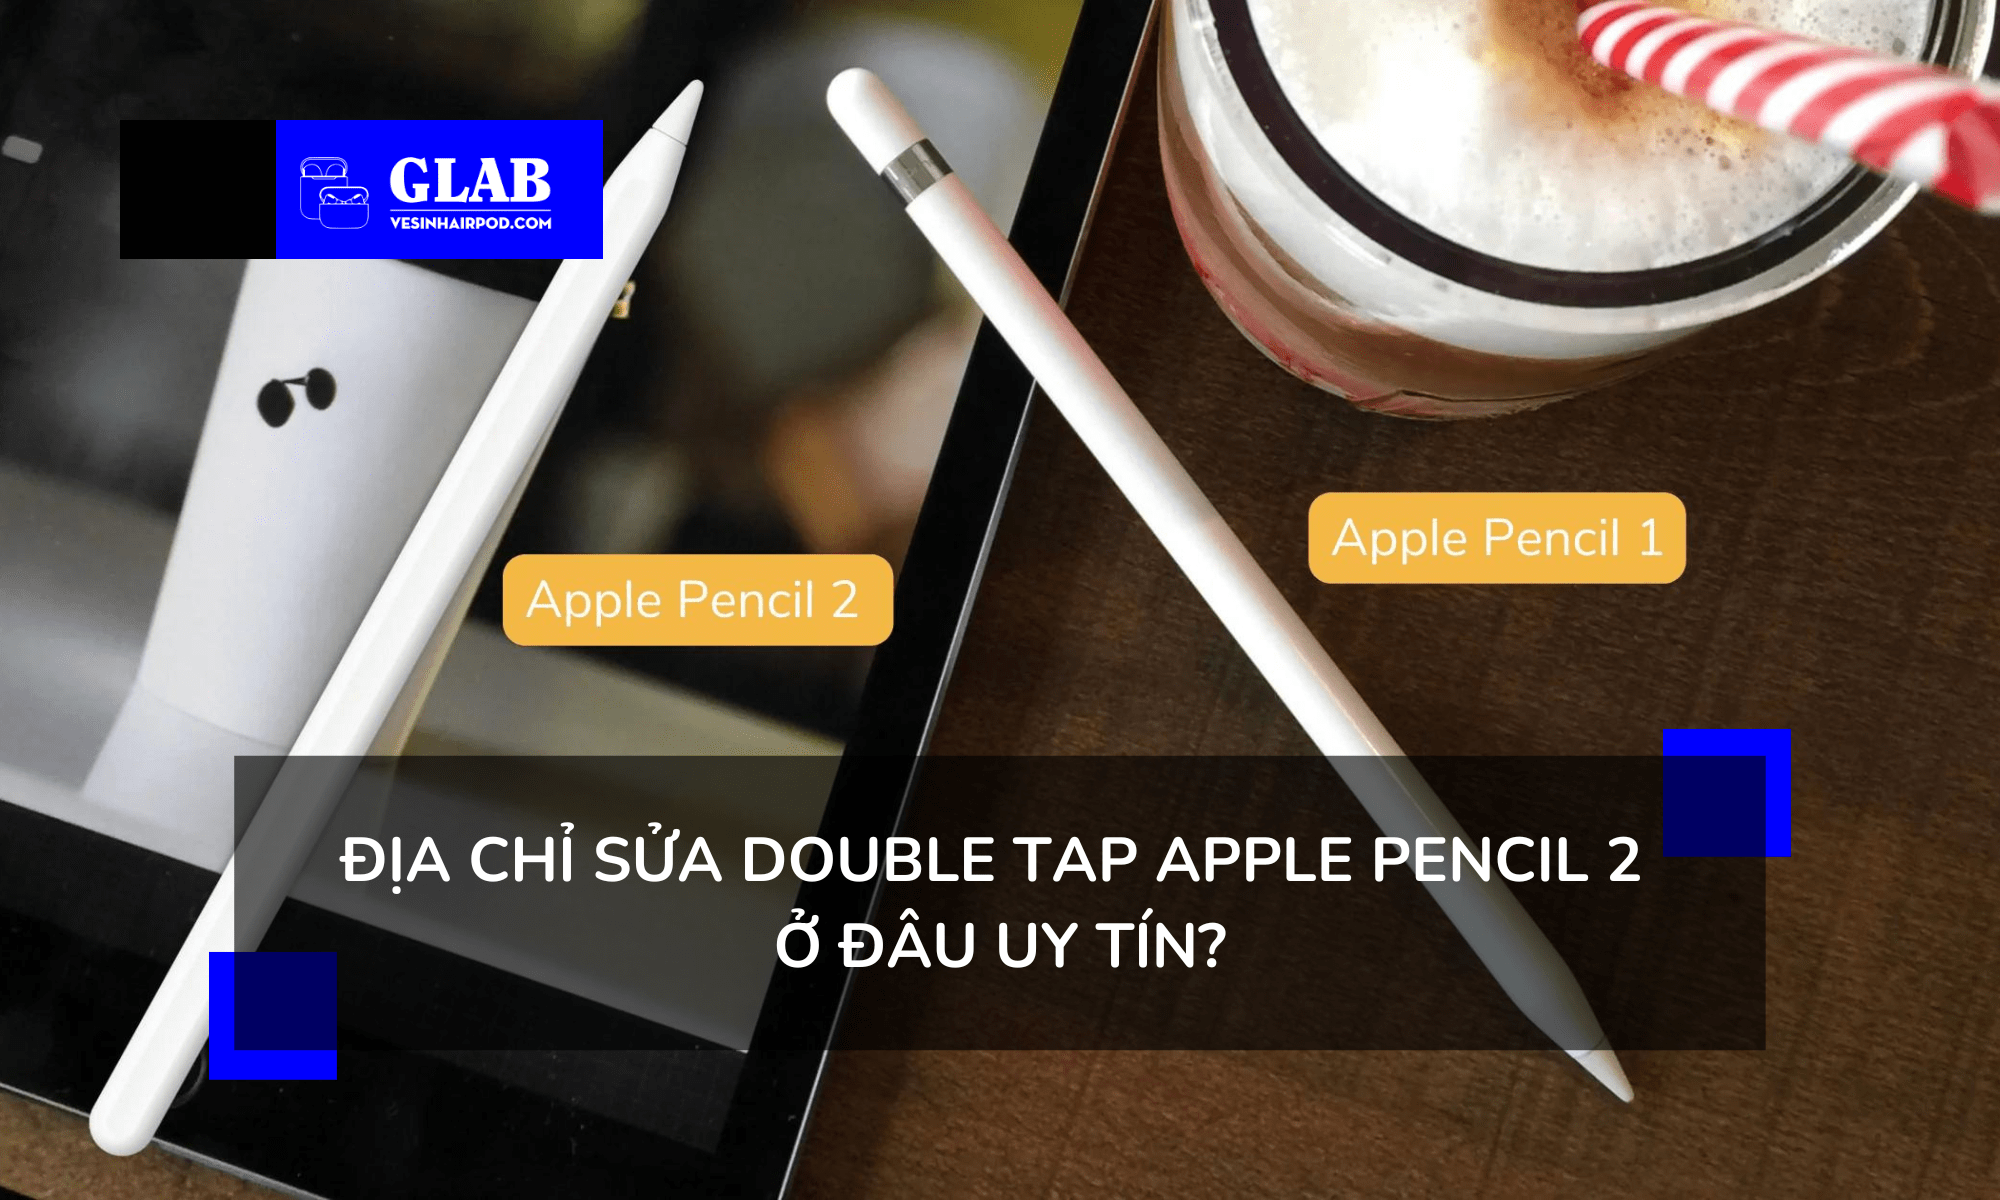 sua-double-tap-apple-pencil-2 